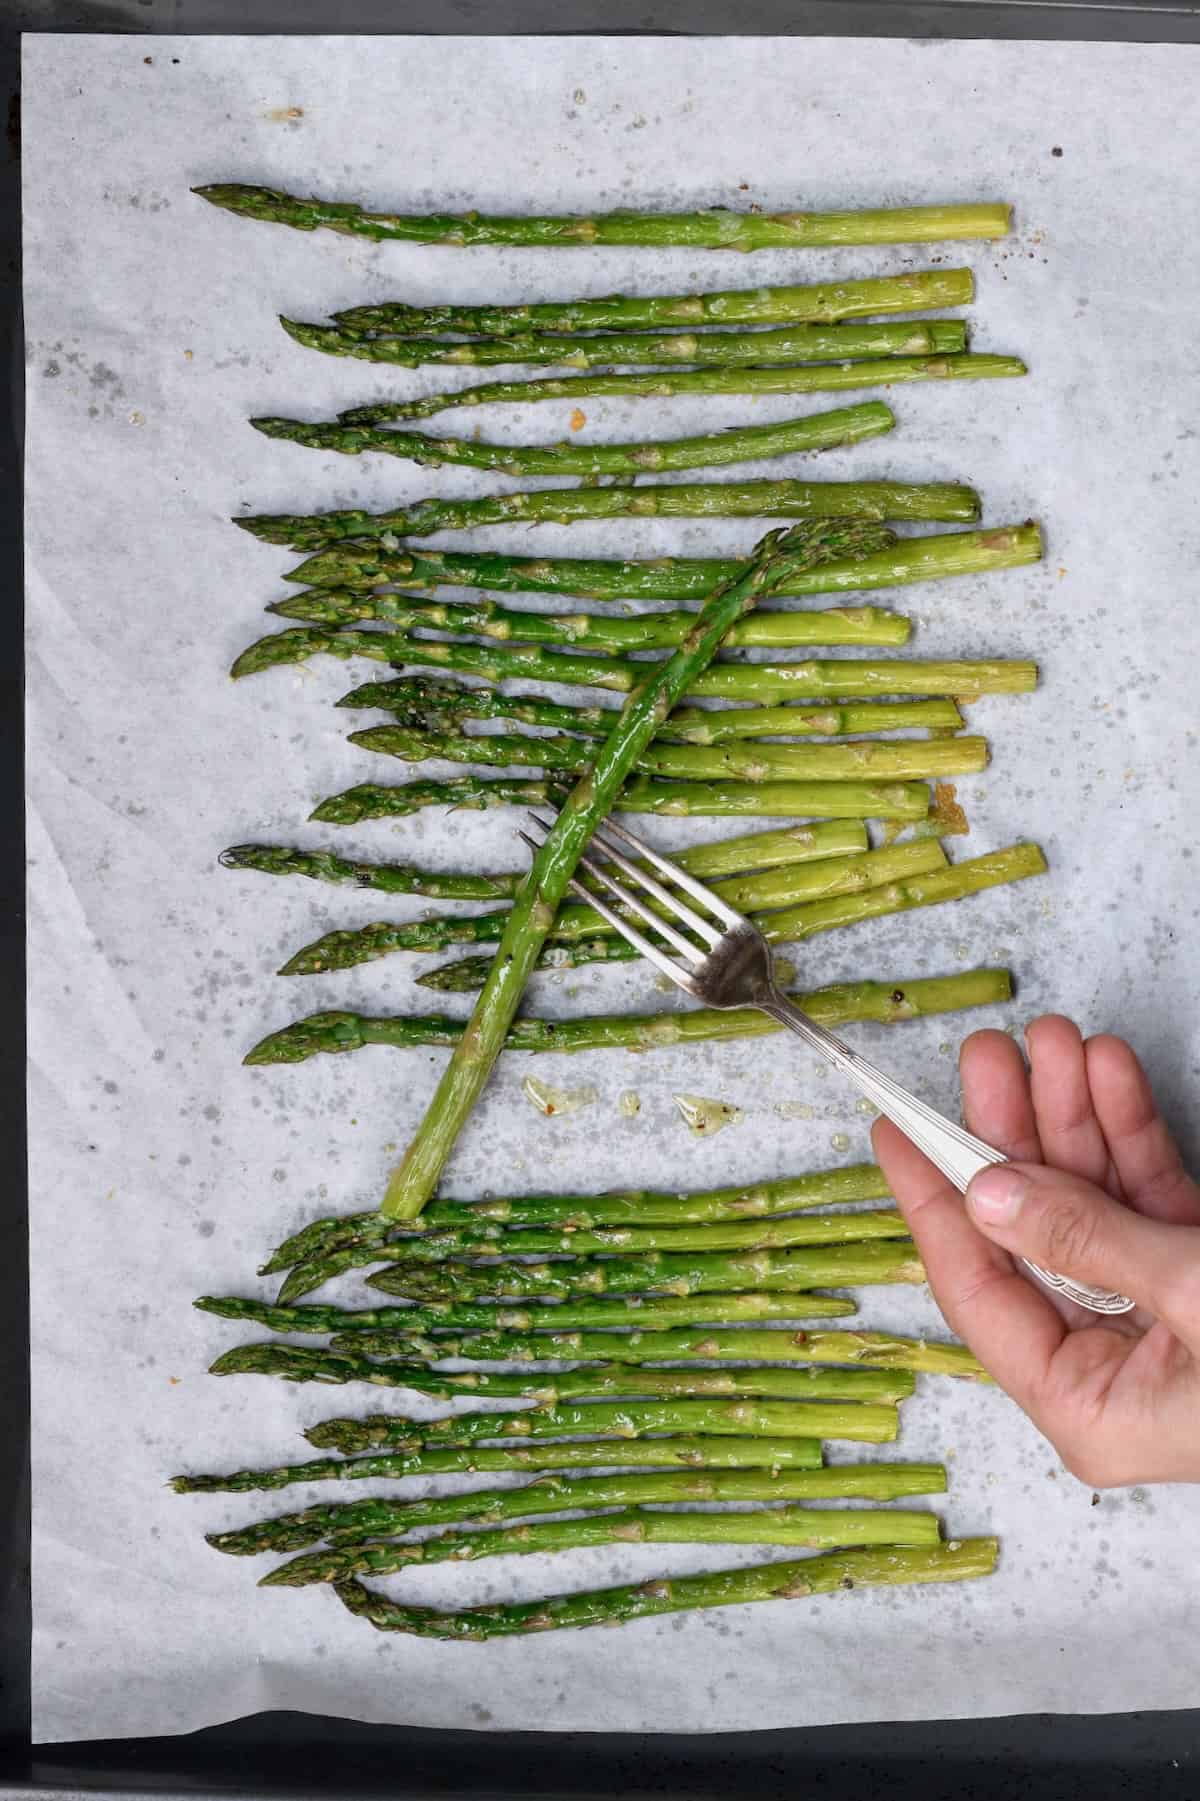 An asparagus stalk on a fork